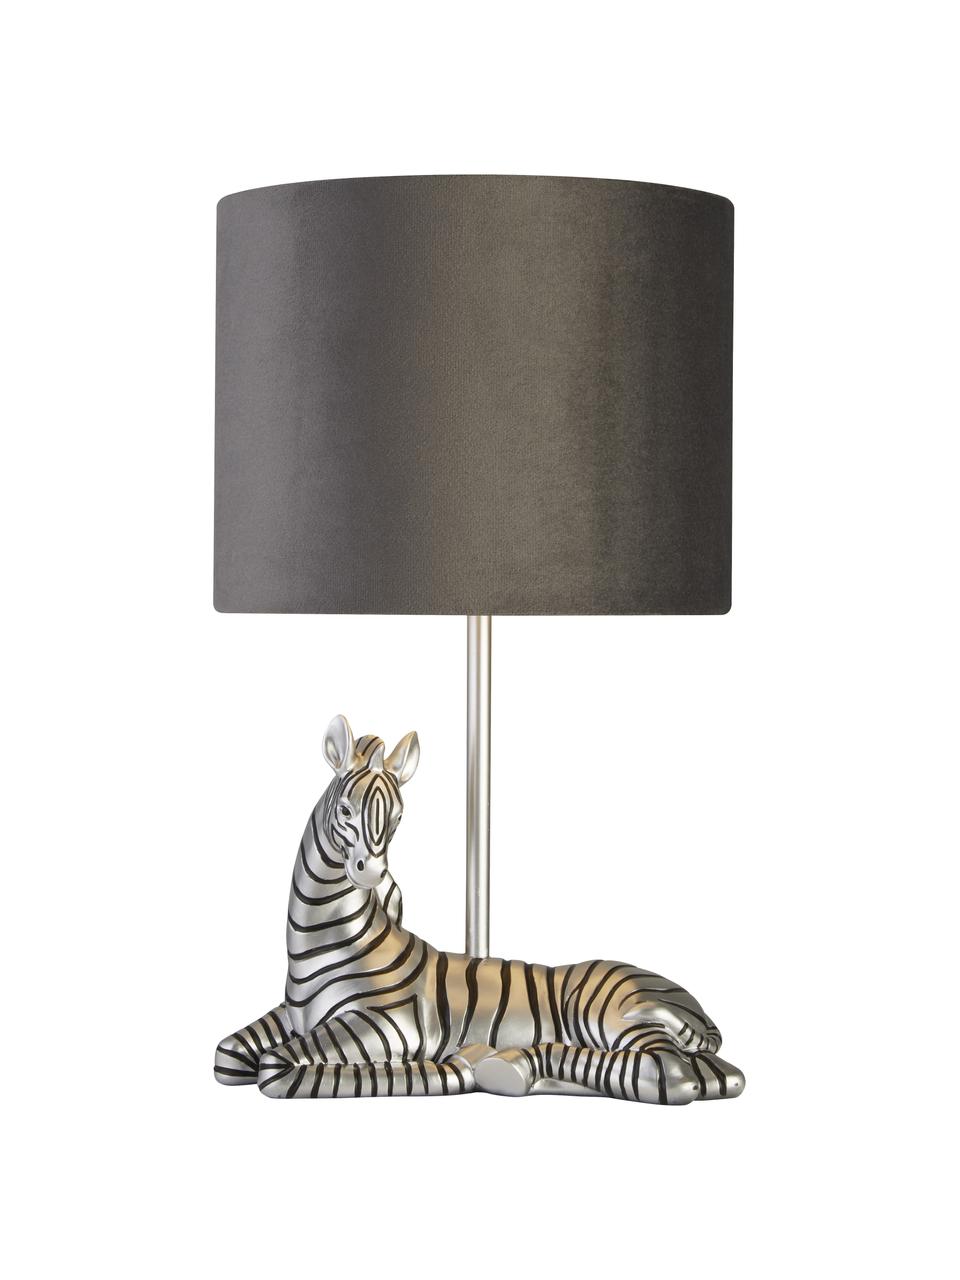 Design tafellamp Zebra met fluwelen lampenkap, Lampenkap: fluweel, Lampvoet: polyresin, Grijs, zilverkleurig, zwart, Ø 20 x H 35 cm